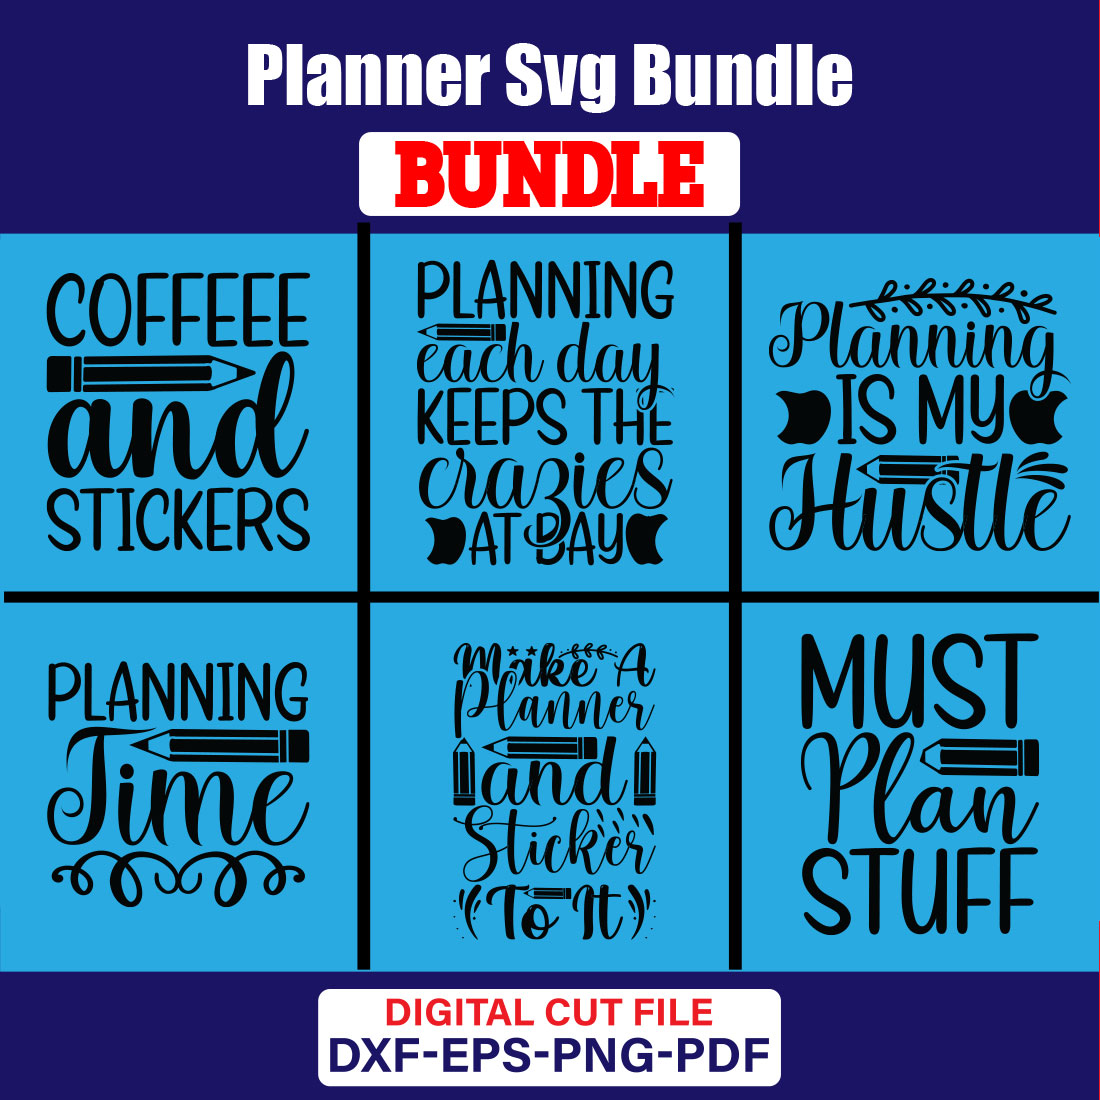 Planner SVG T-shirt Design Bundle Vol-02 cover image.